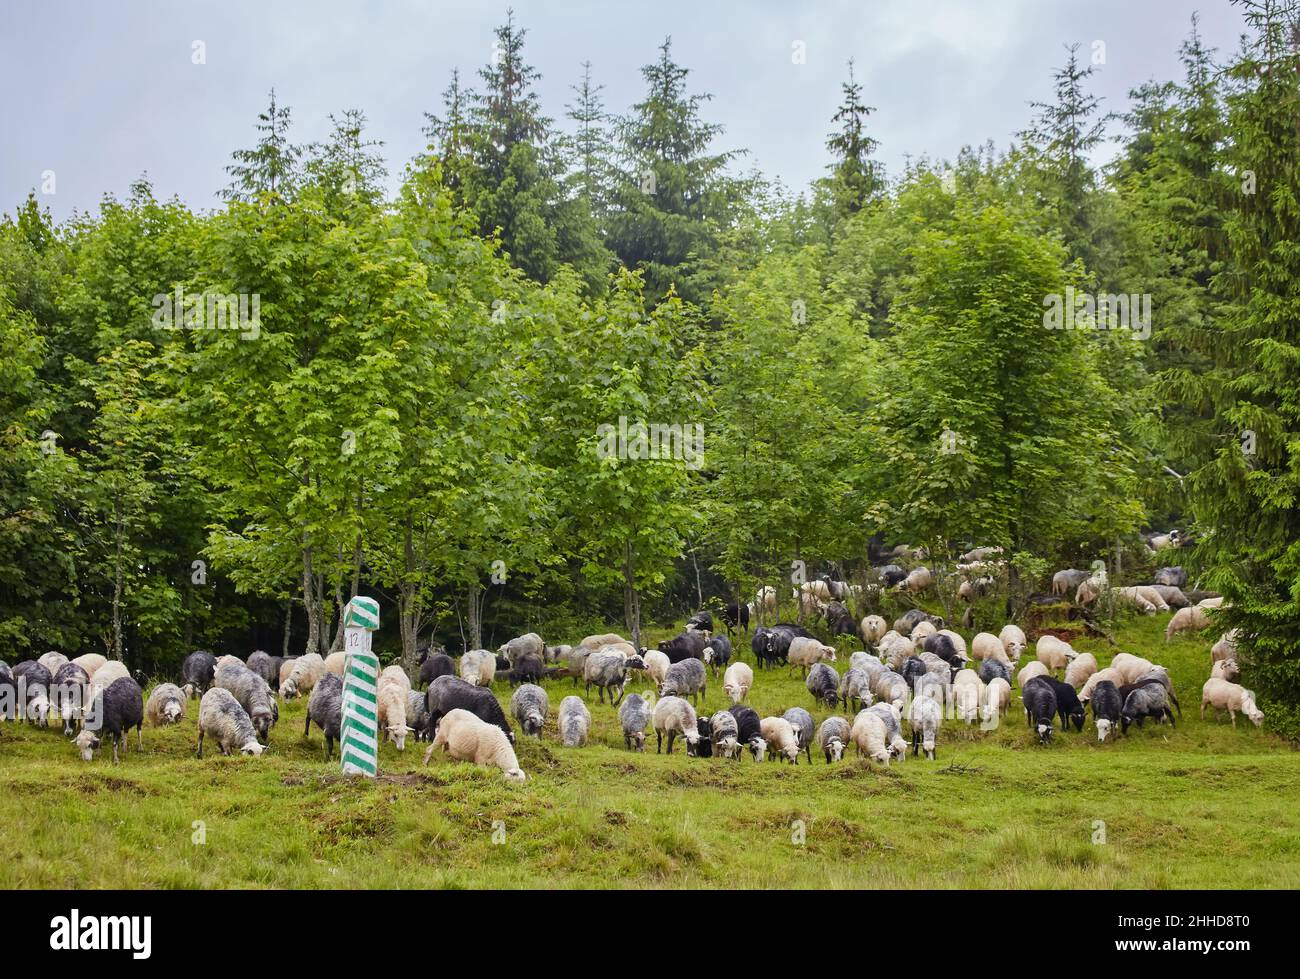 Panorama der Landschaft mit Schafherde grasen auf grünen Weiden in den Bergen. Junge weiße, blsck und braune Schafe grasen auf dem Hof. Stockfoto